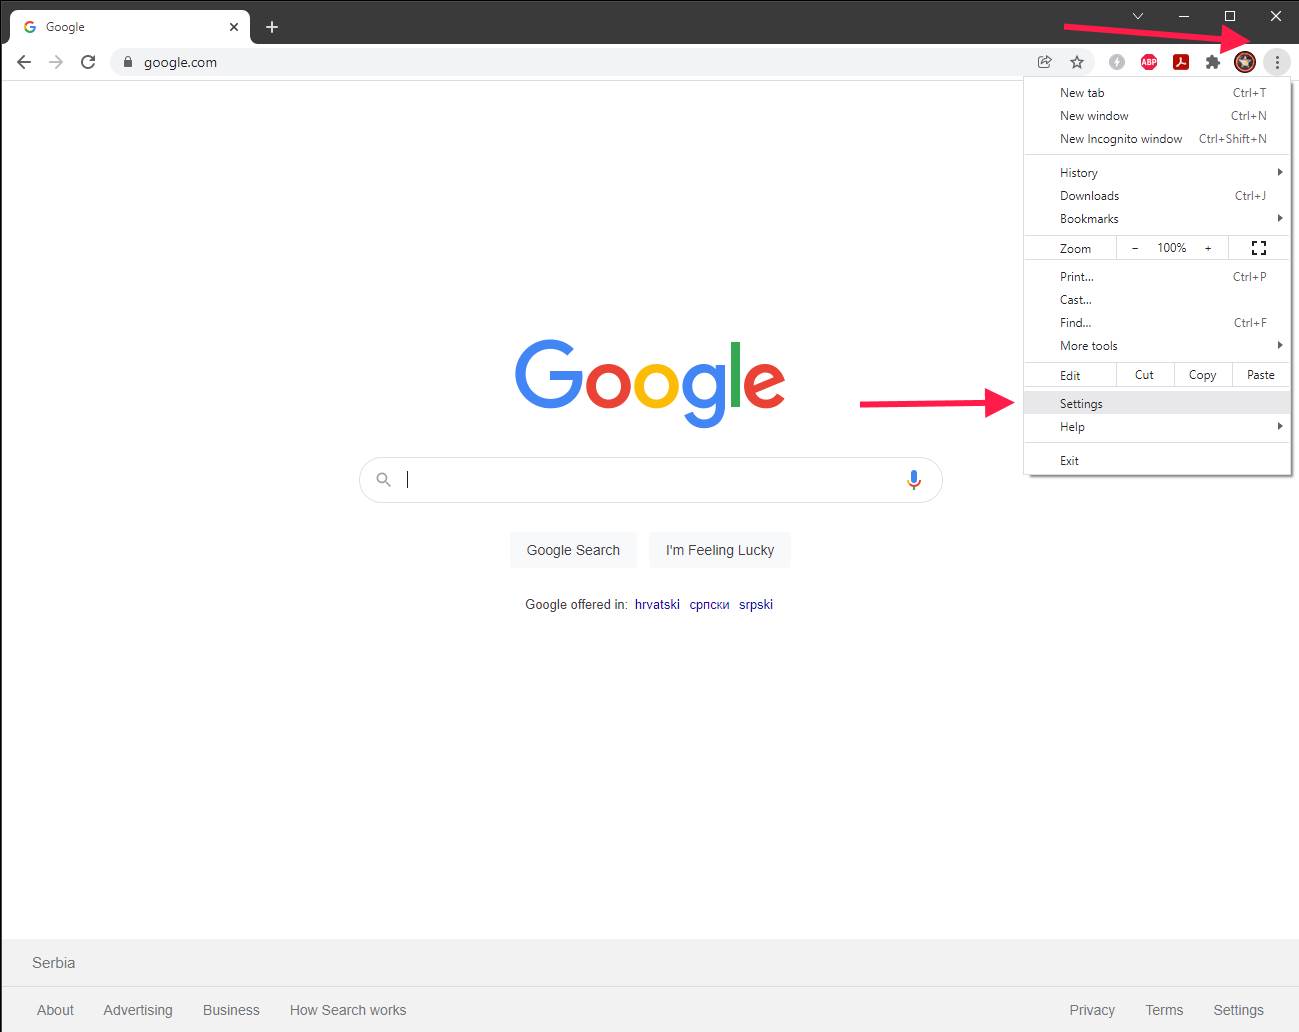  Google Chrome - SmartLife / Marko Nešović / Google Chrome 